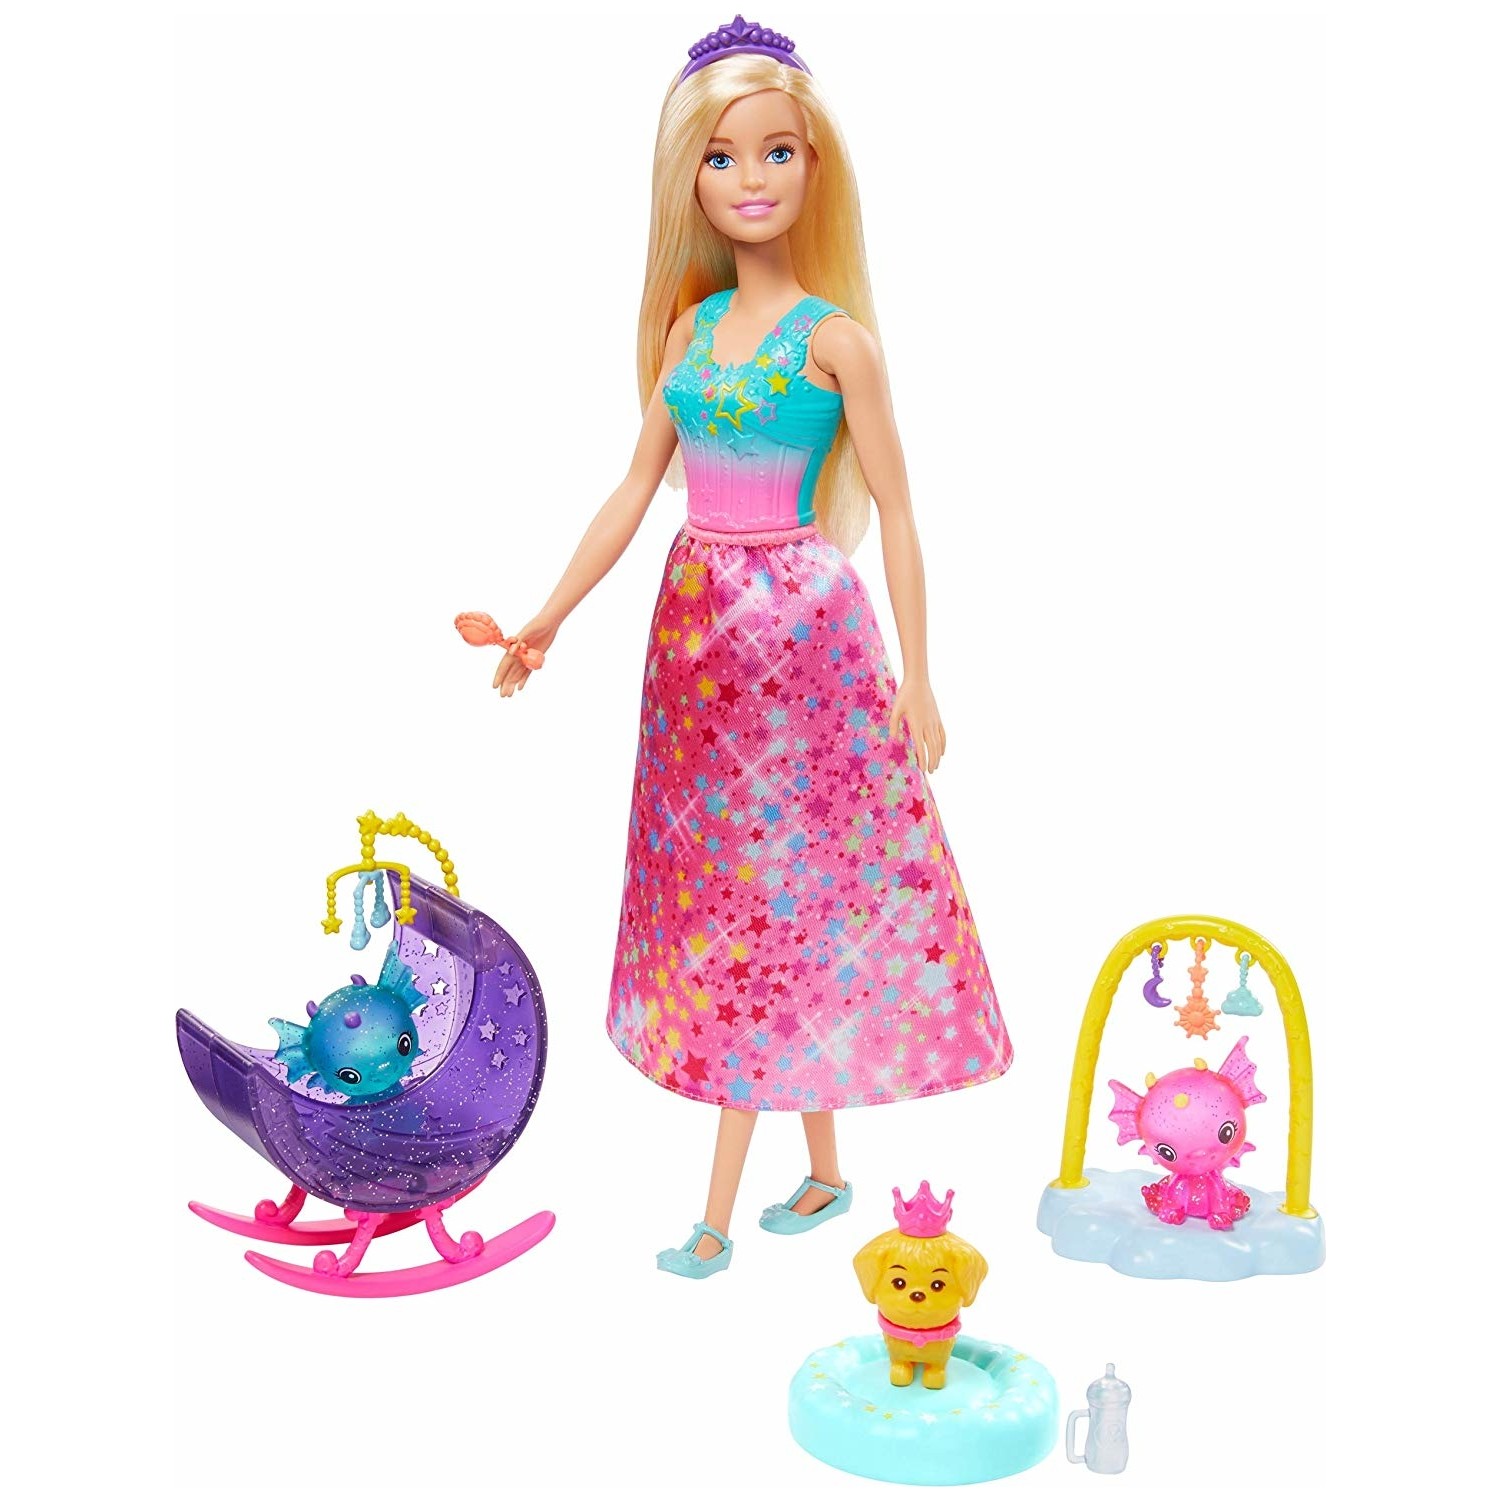 Кукла Barbie Dreamtopia Princess Doll and Accessories GJK51 куклы barbie dreamtopia fairy dolls красочное розовое платье фиолетовые волосы gjk00